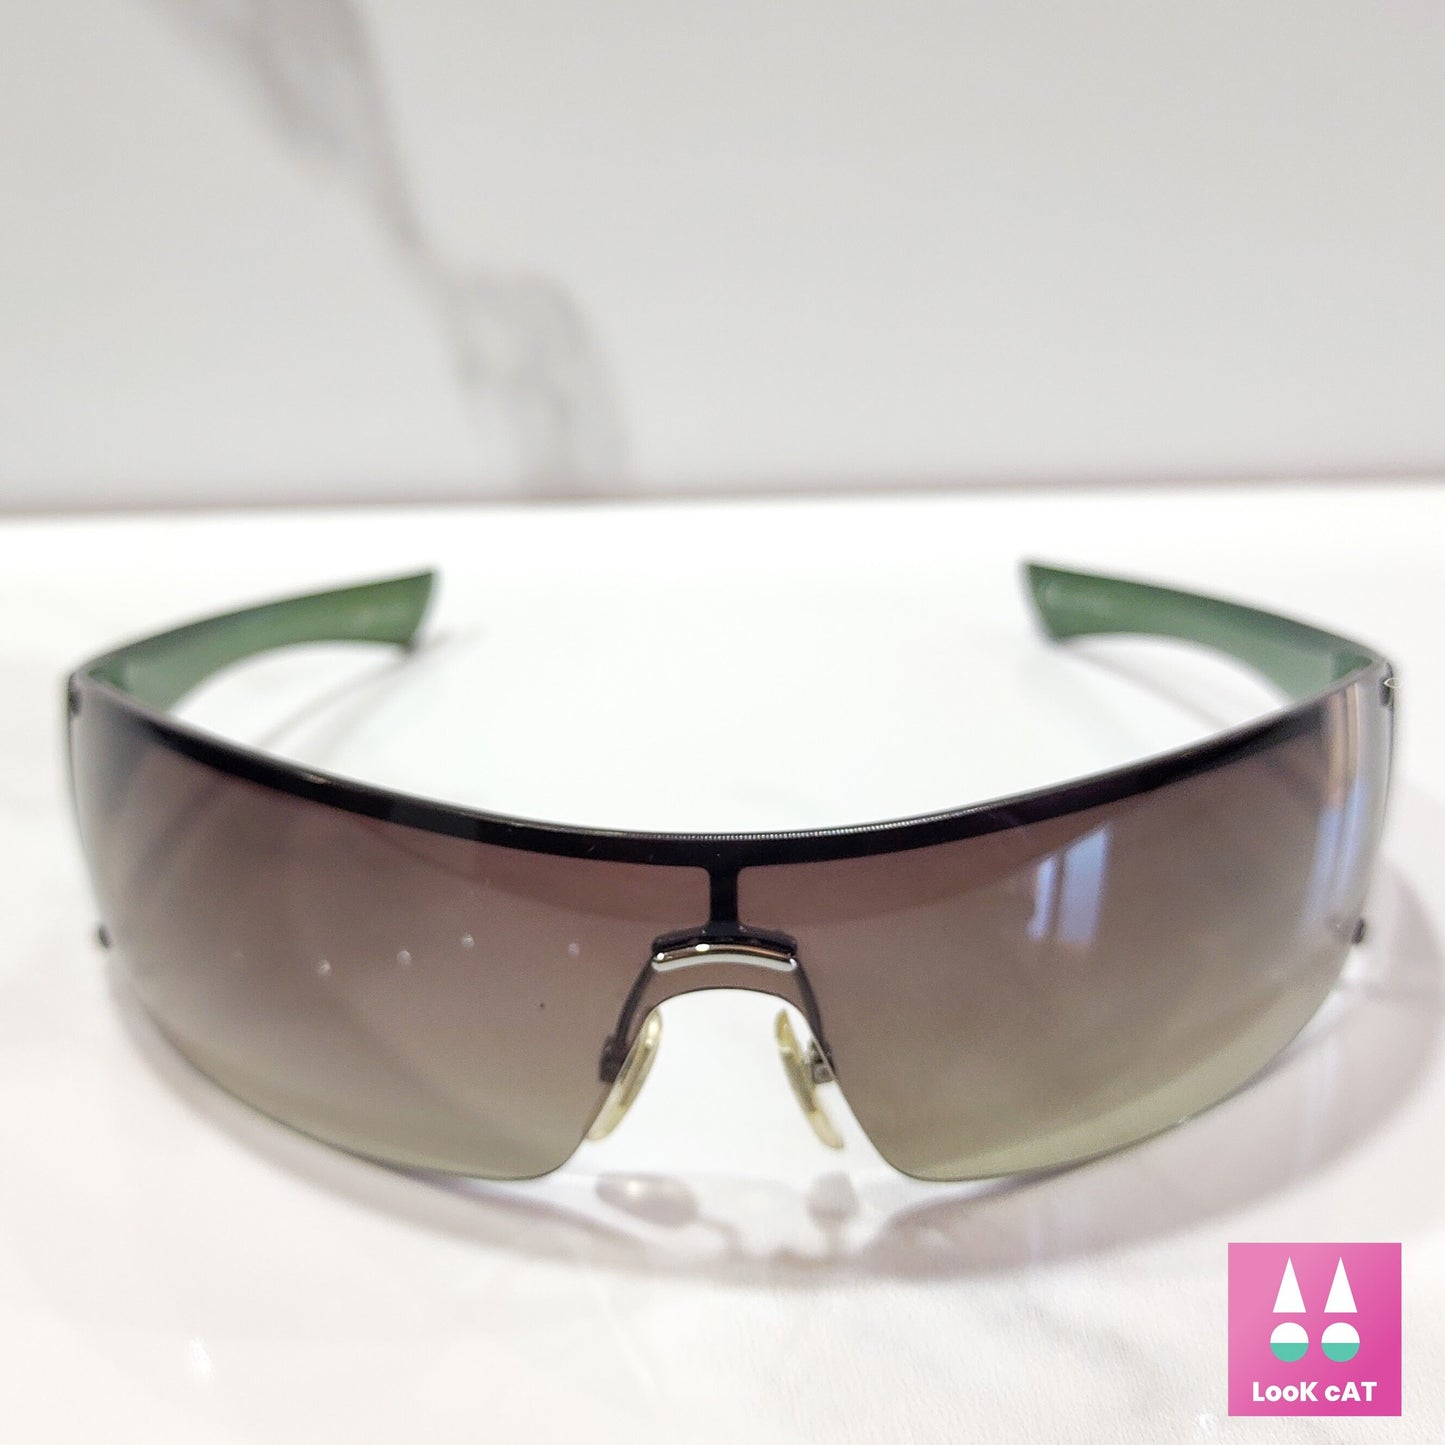 Gucci 1824 vintage wrap shield sunglasses NOS lunette brille glasses 90s